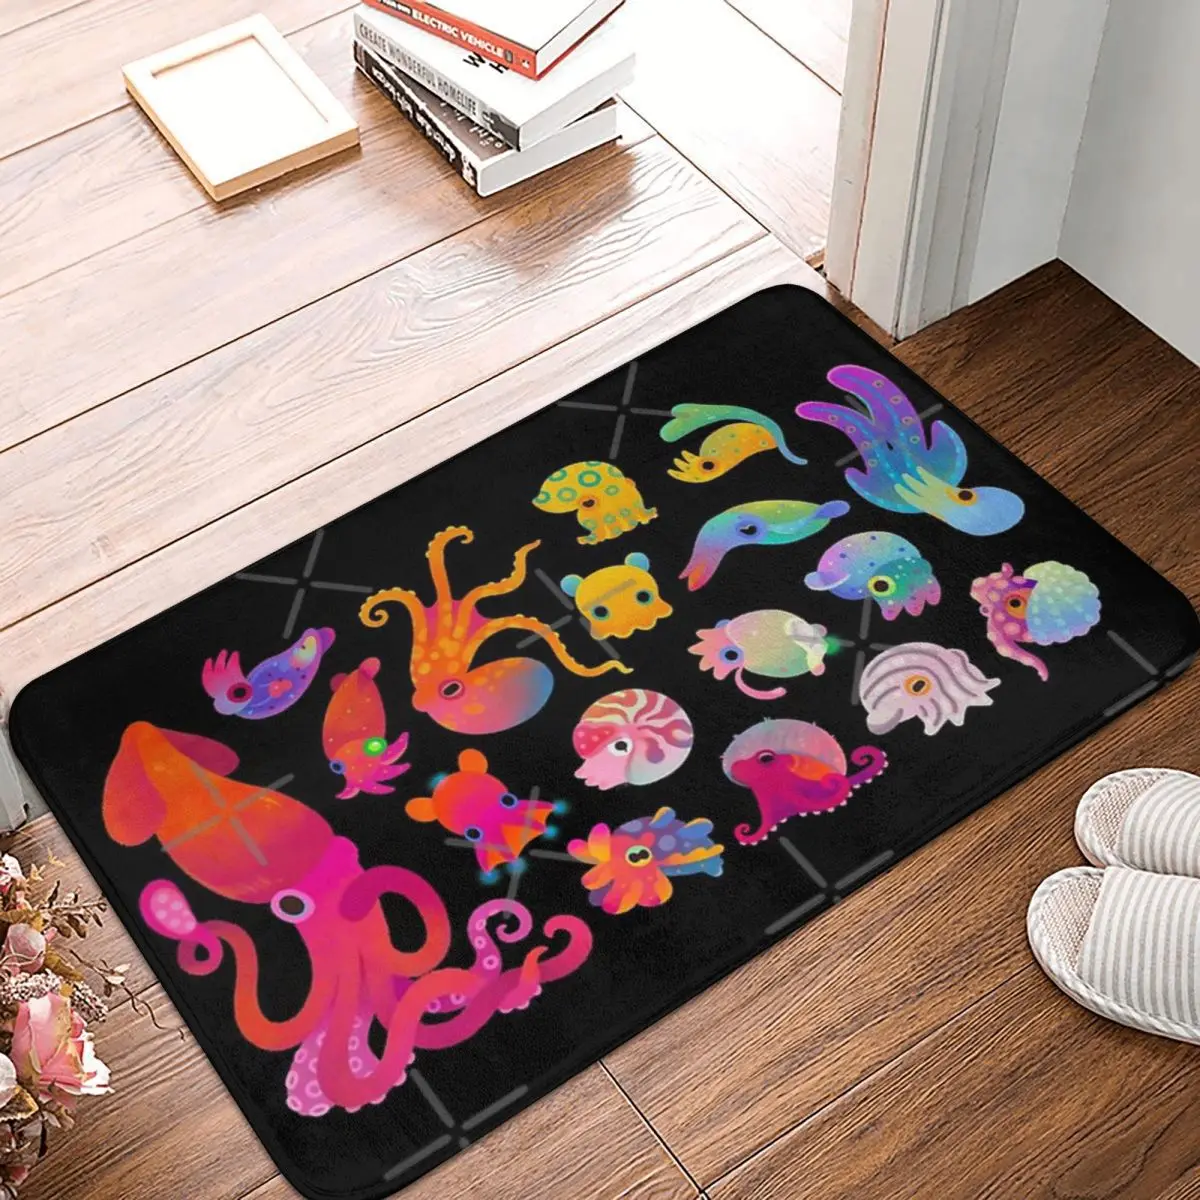 

Коврик Cephalopod, напольные коврики из полиэстера, популярные прочные легко моющиеся коврики для подарков на день рождения, Настраиваемые